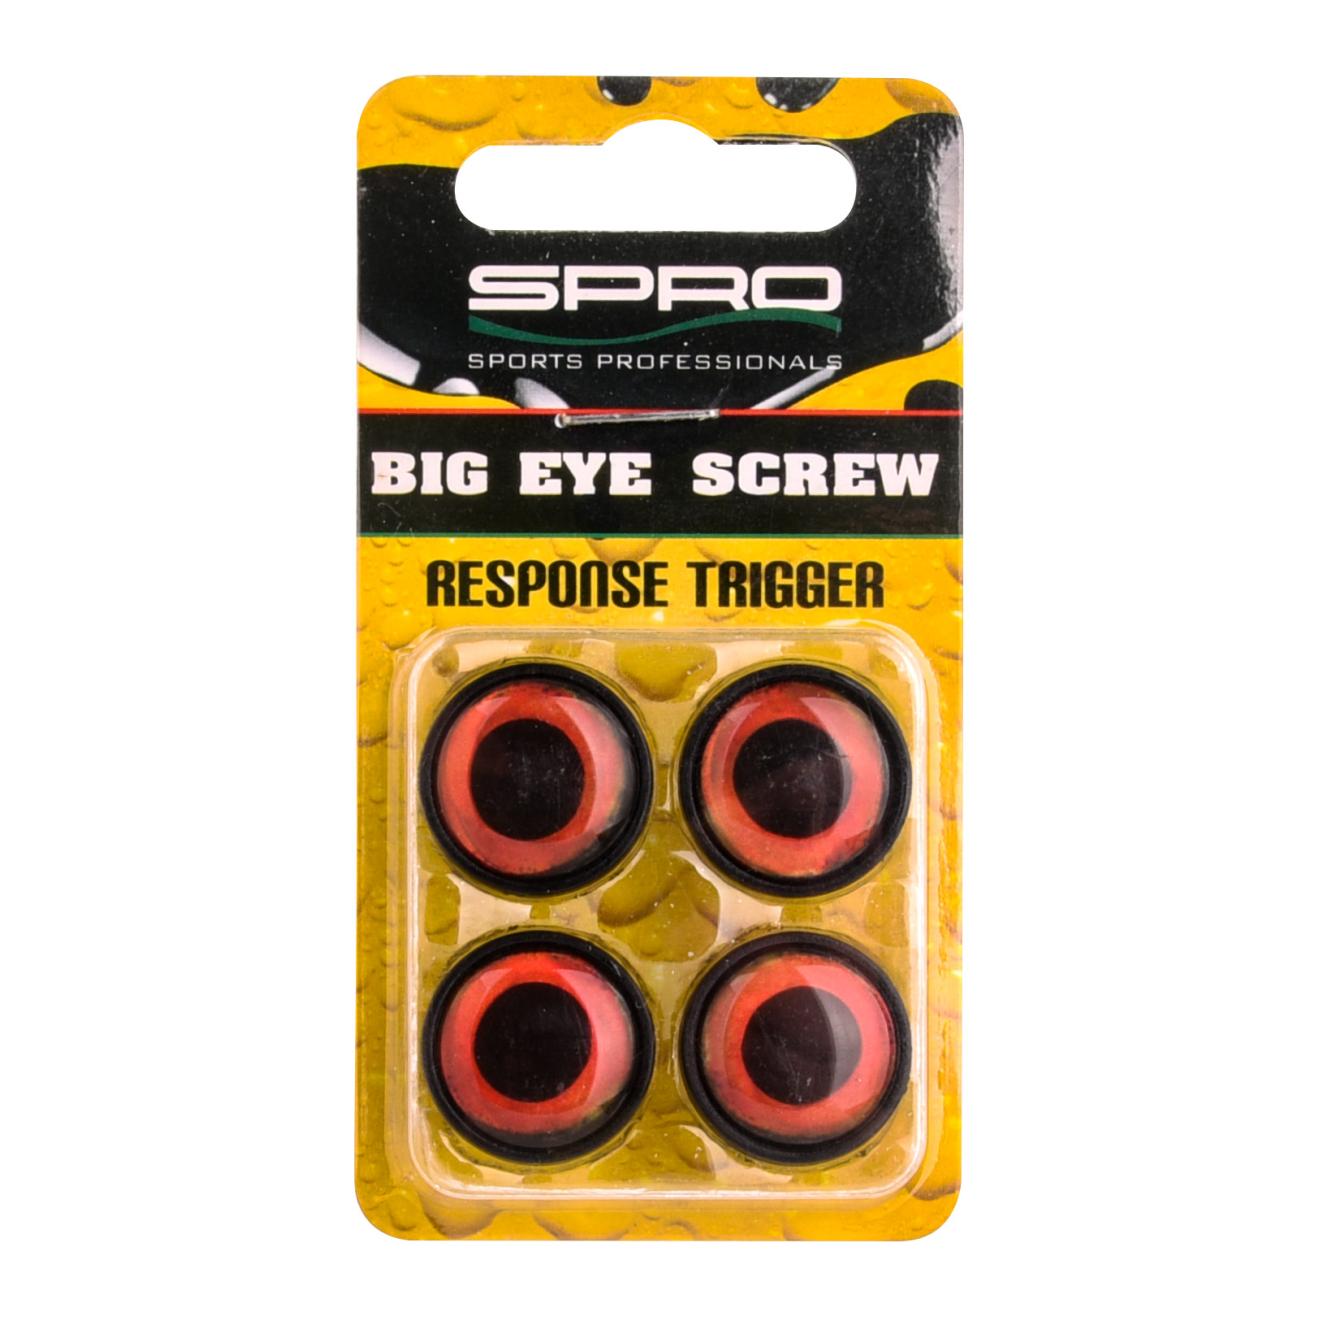 Big Eye Screw